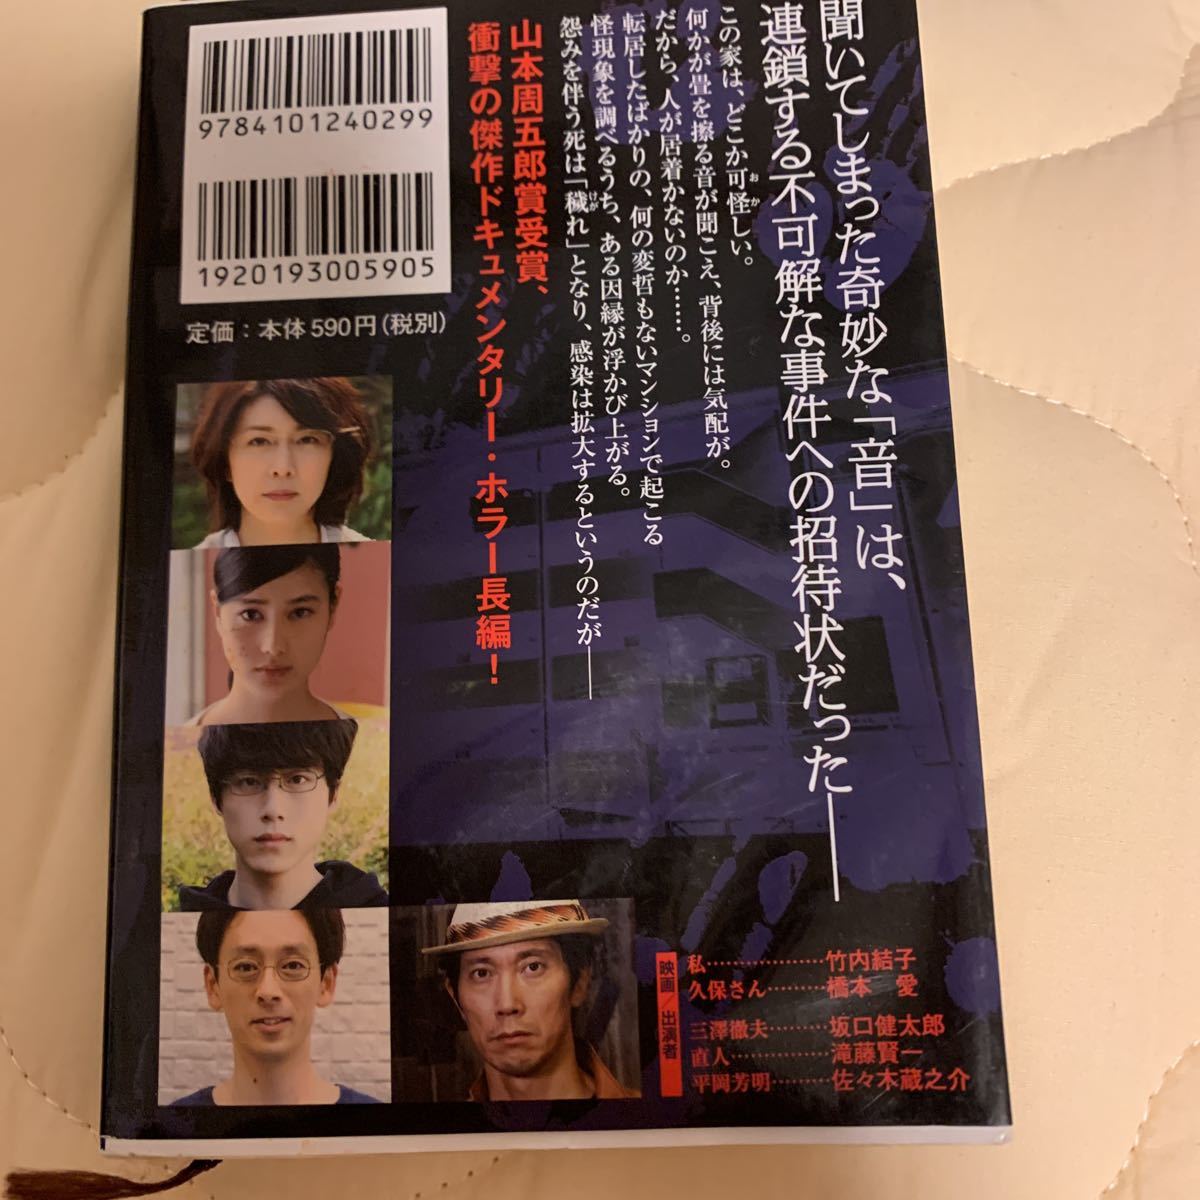  осталось . библиотека книга@ Gentosha библиотека Takeuchi Yuuko Хасимото love фильм . двойной покрытие б/у 